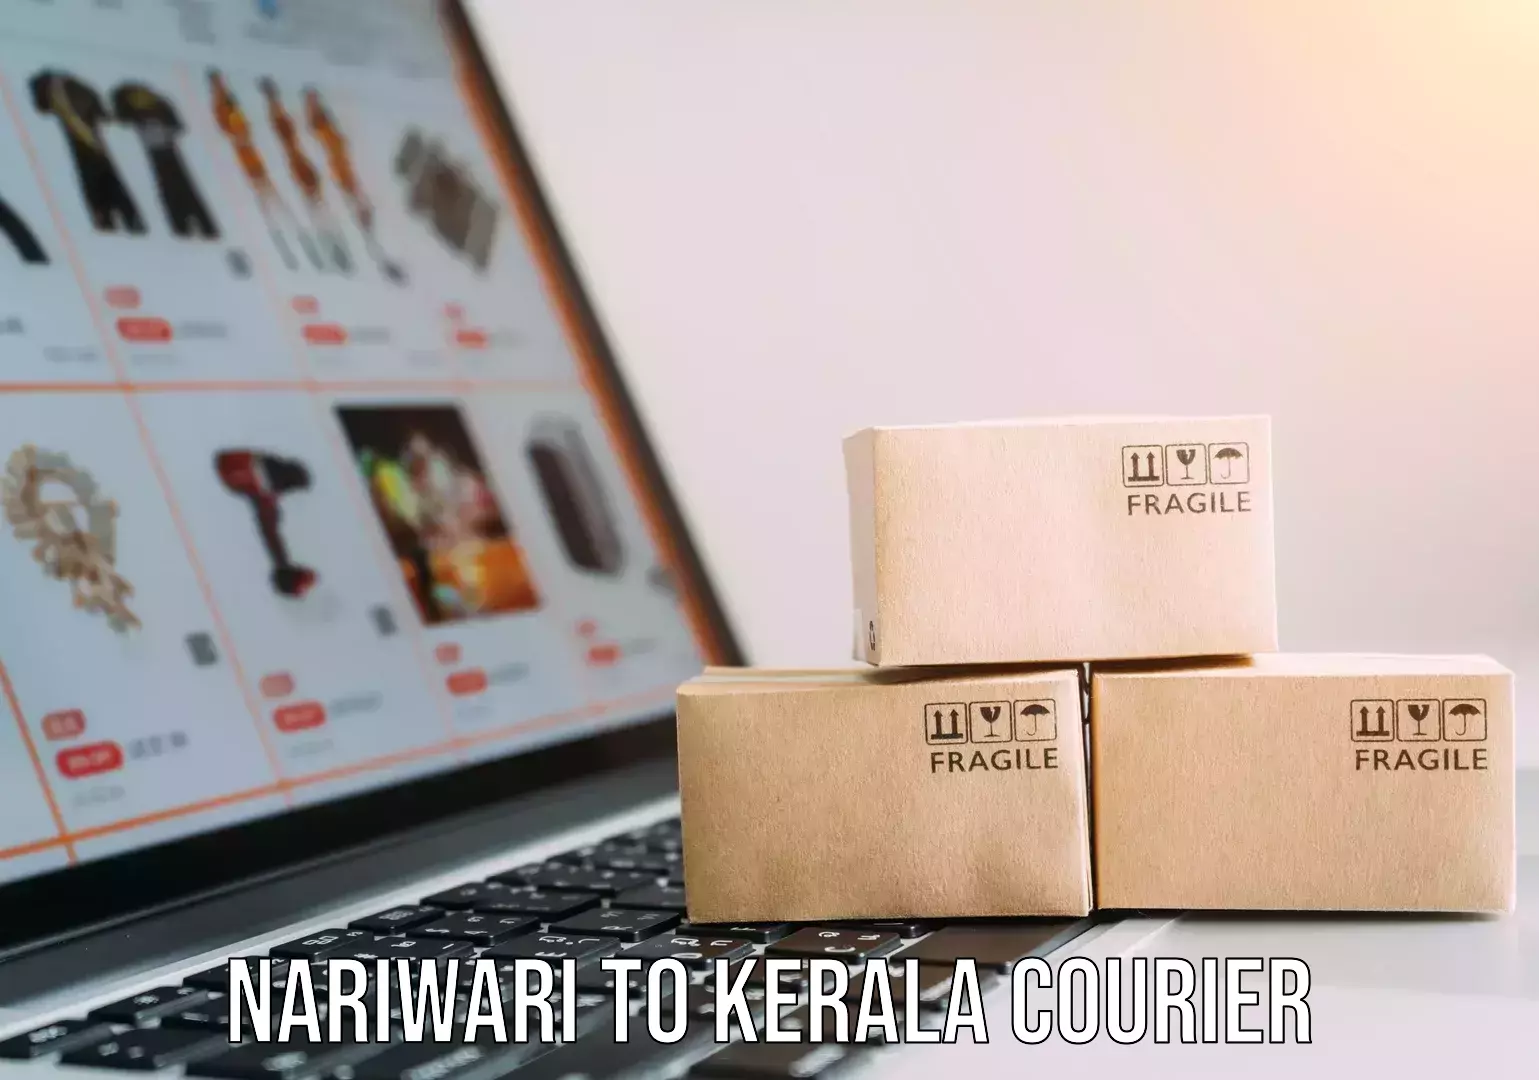 Furniture moving solutions Nariwari to Kerala